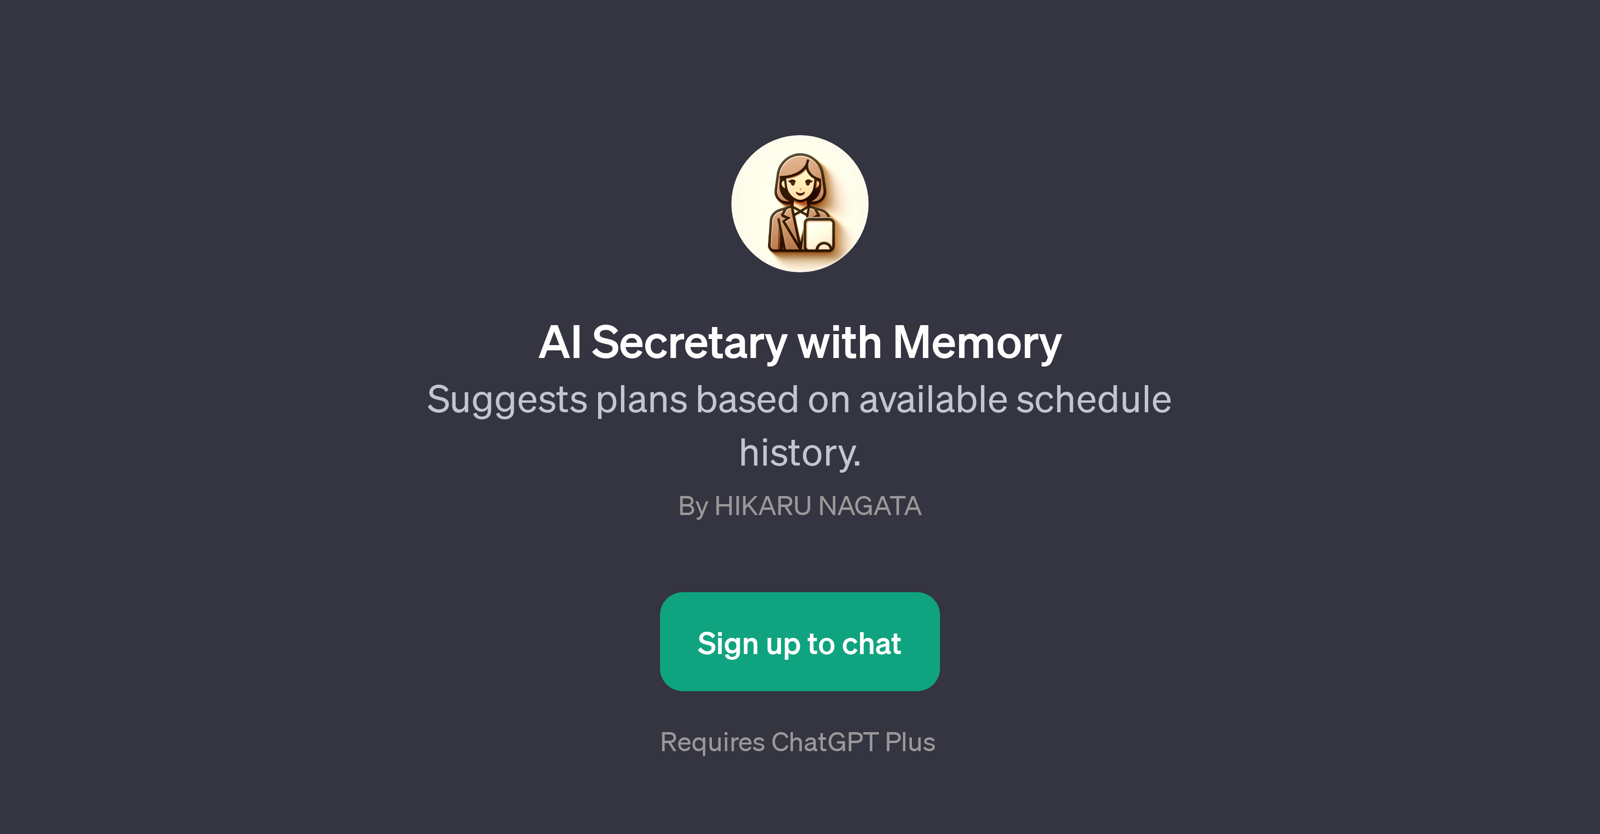 AI Secretary with Memory website